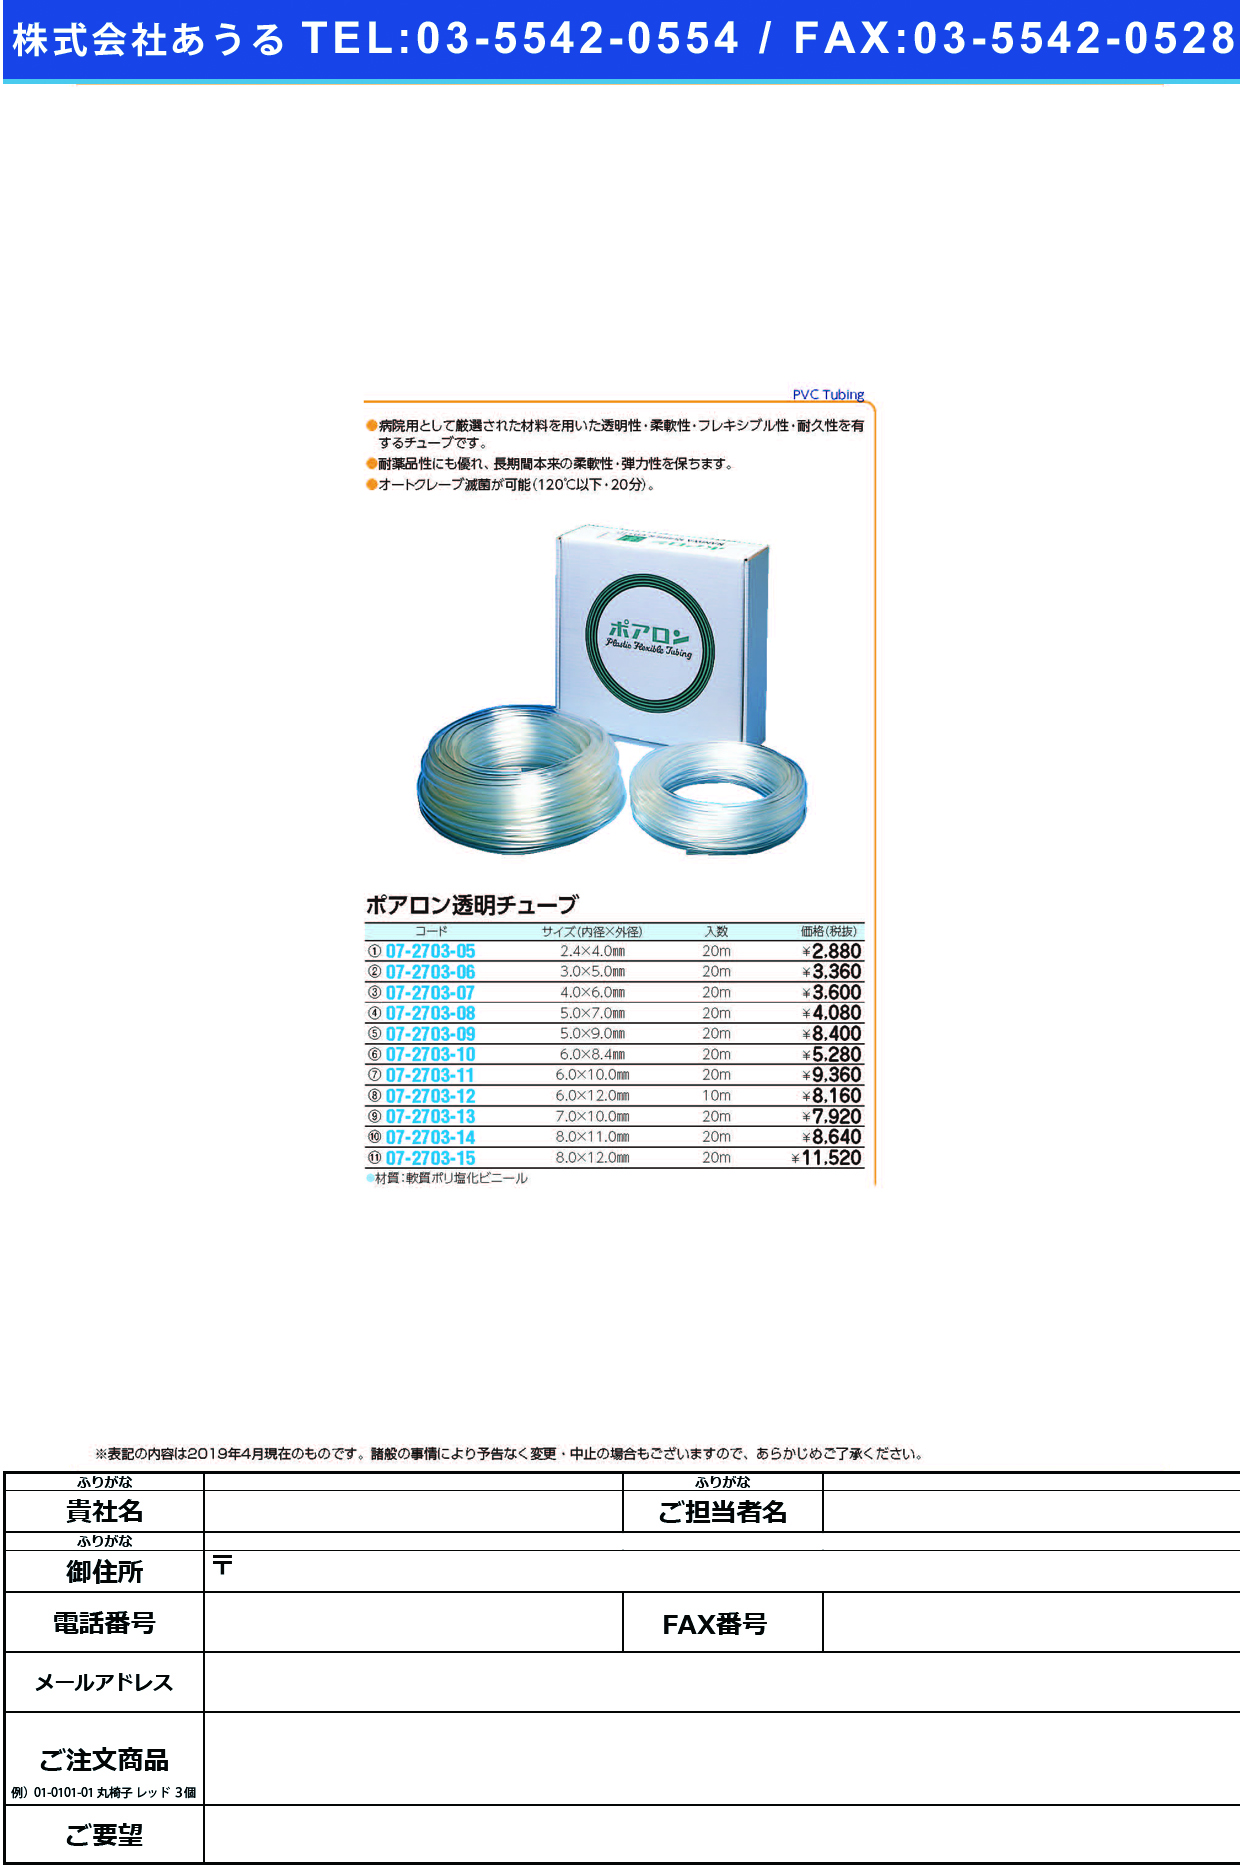 (07-2703-08)ポアロン透明チューブ 5X7MM(20Mｲﾘ) ﾎﾟｱﾛﾝﾄｳﾒｲﾁｭｰﾌﾞ【1箱単位】【2019年カタログ商品】